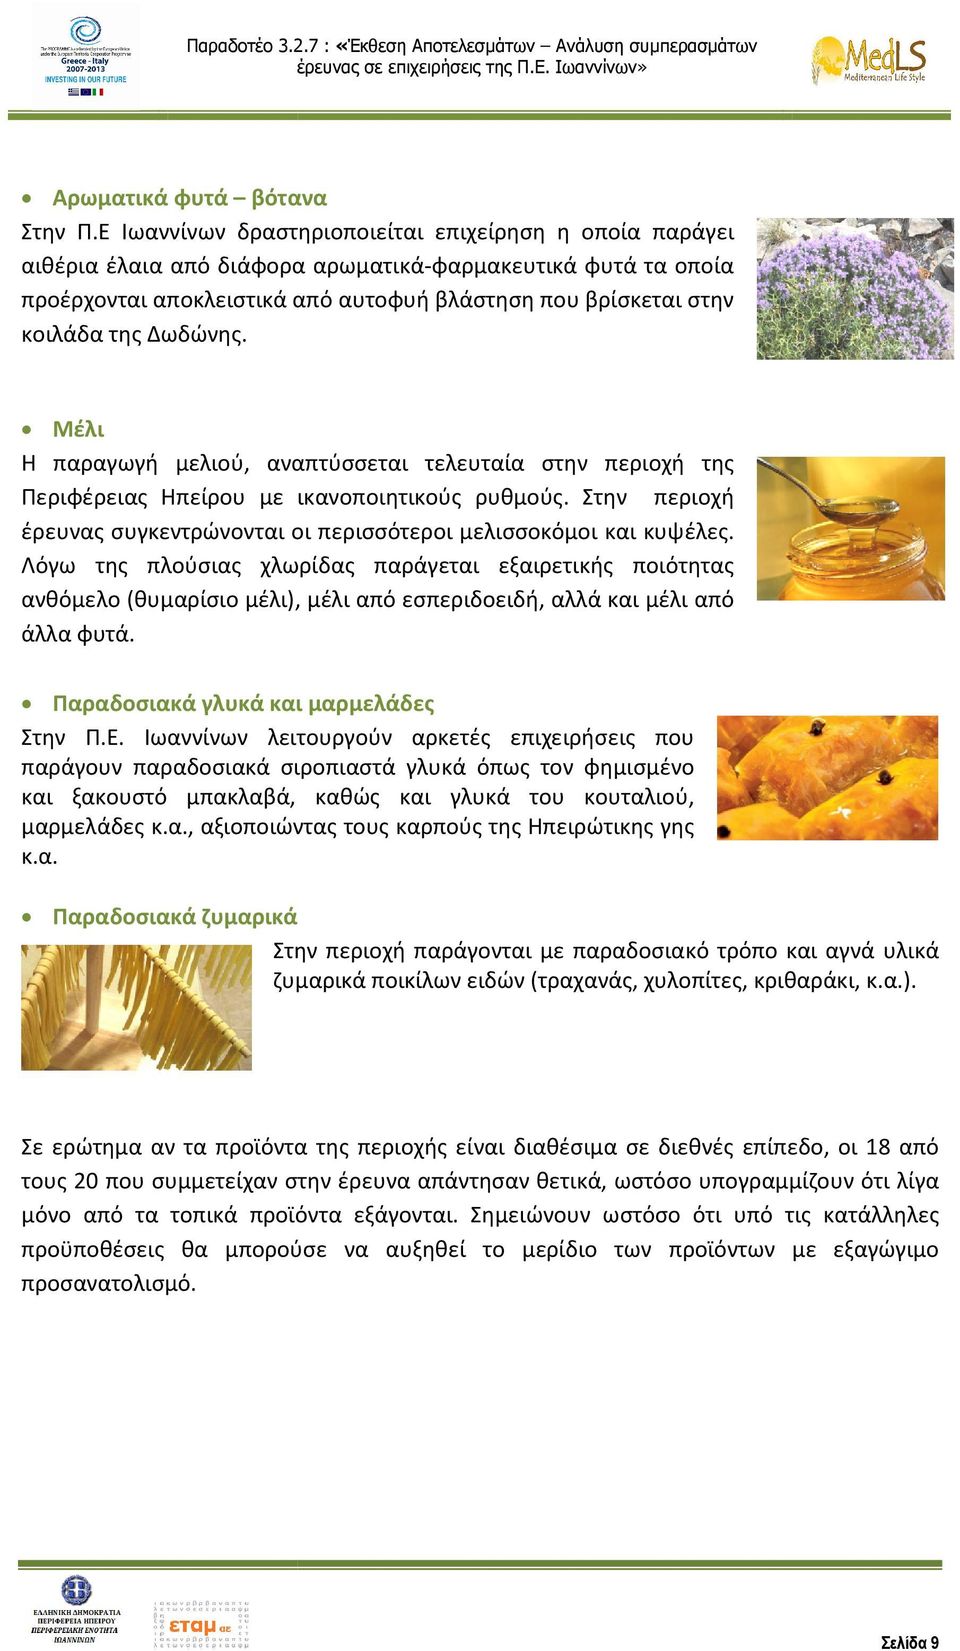 Δωδώνης. Μέλι Η παραγωγή μελιού, αναπτύσσεται τελευταία στην περιοχή της Περιφέρειας Ηπείρου με ικανοποιητικούς ρυθμούς. Στην περιοχή έρευνας συγκεντρώνονται οι περισσότεροι μελισσοκόμοι και κυψέλες.